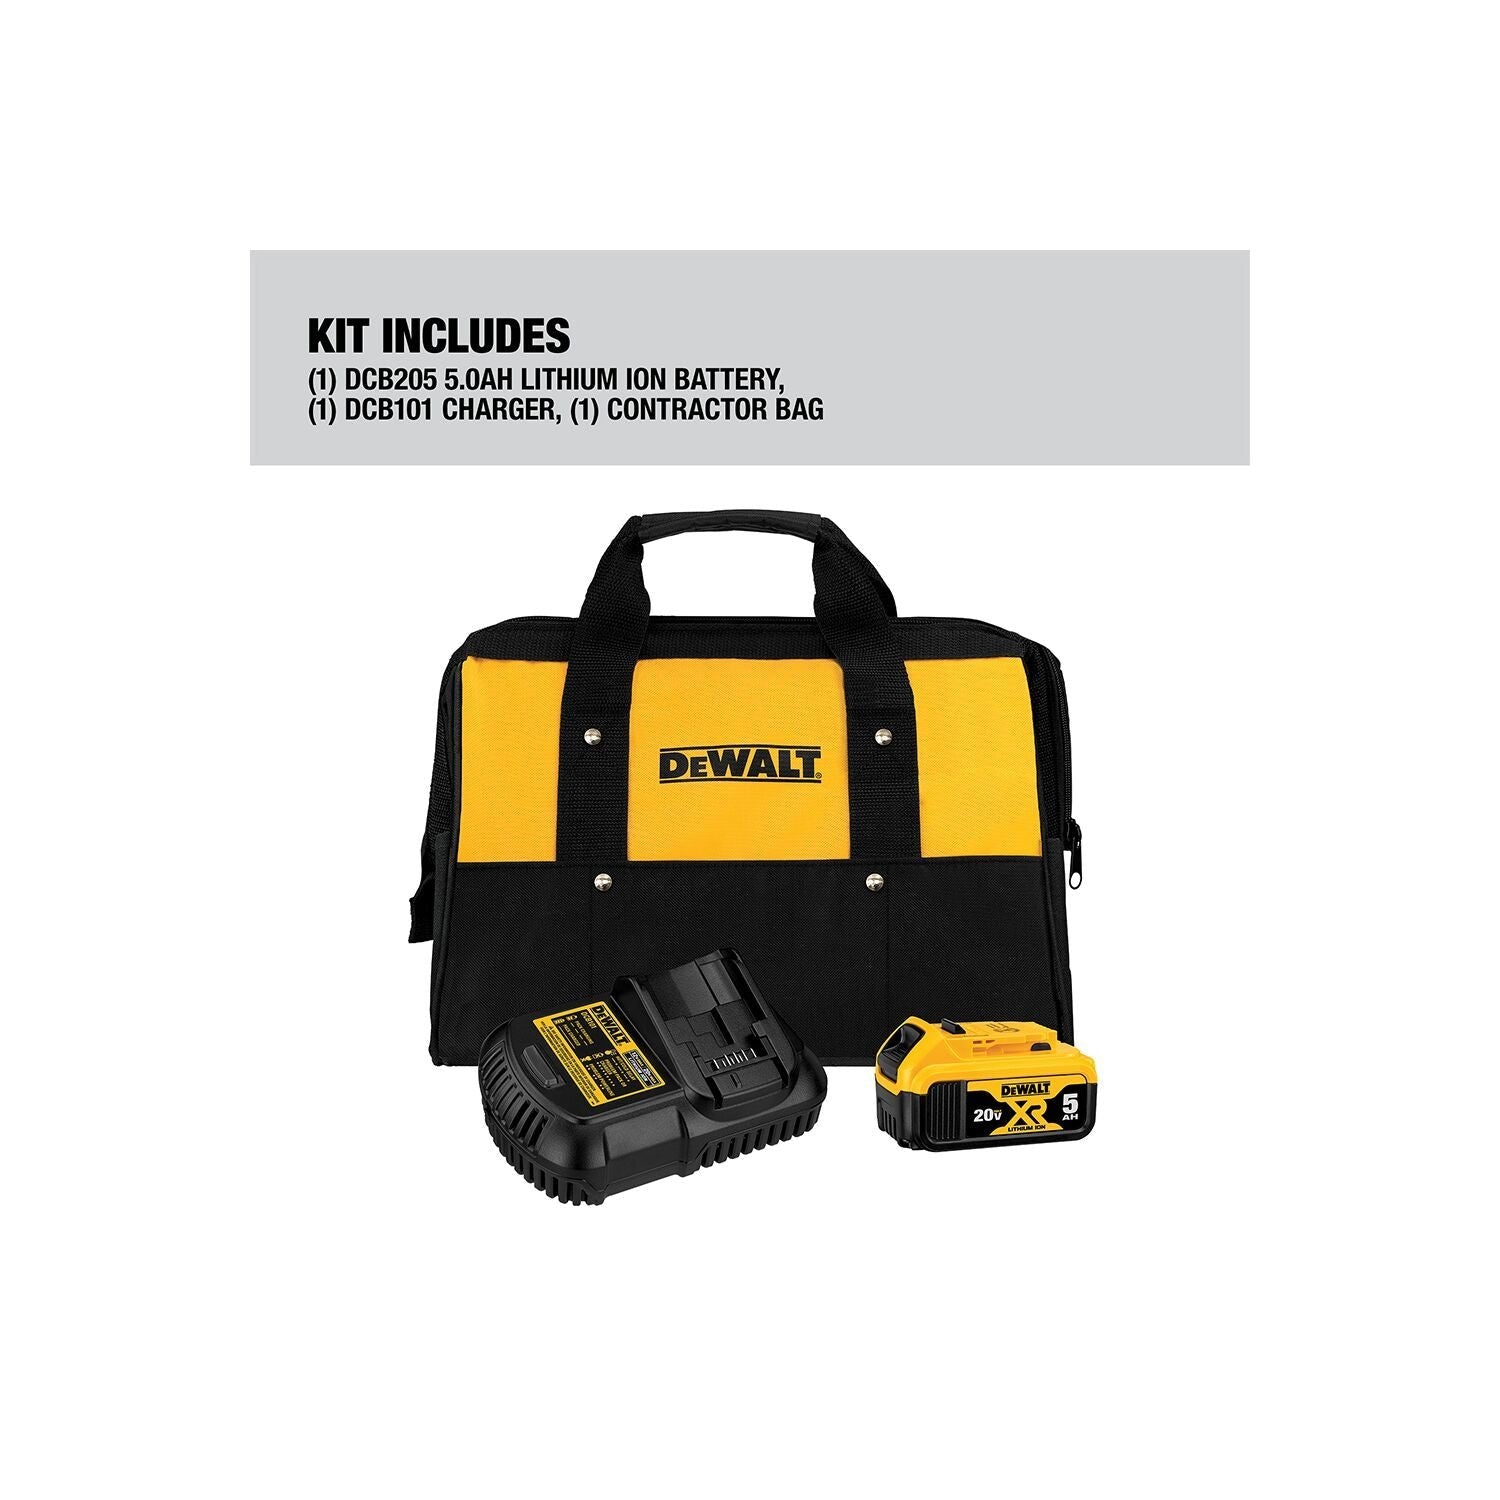 DEWALT DCB205CK 20V MAX* 5.0Ah Battery Charger Kit with Bag